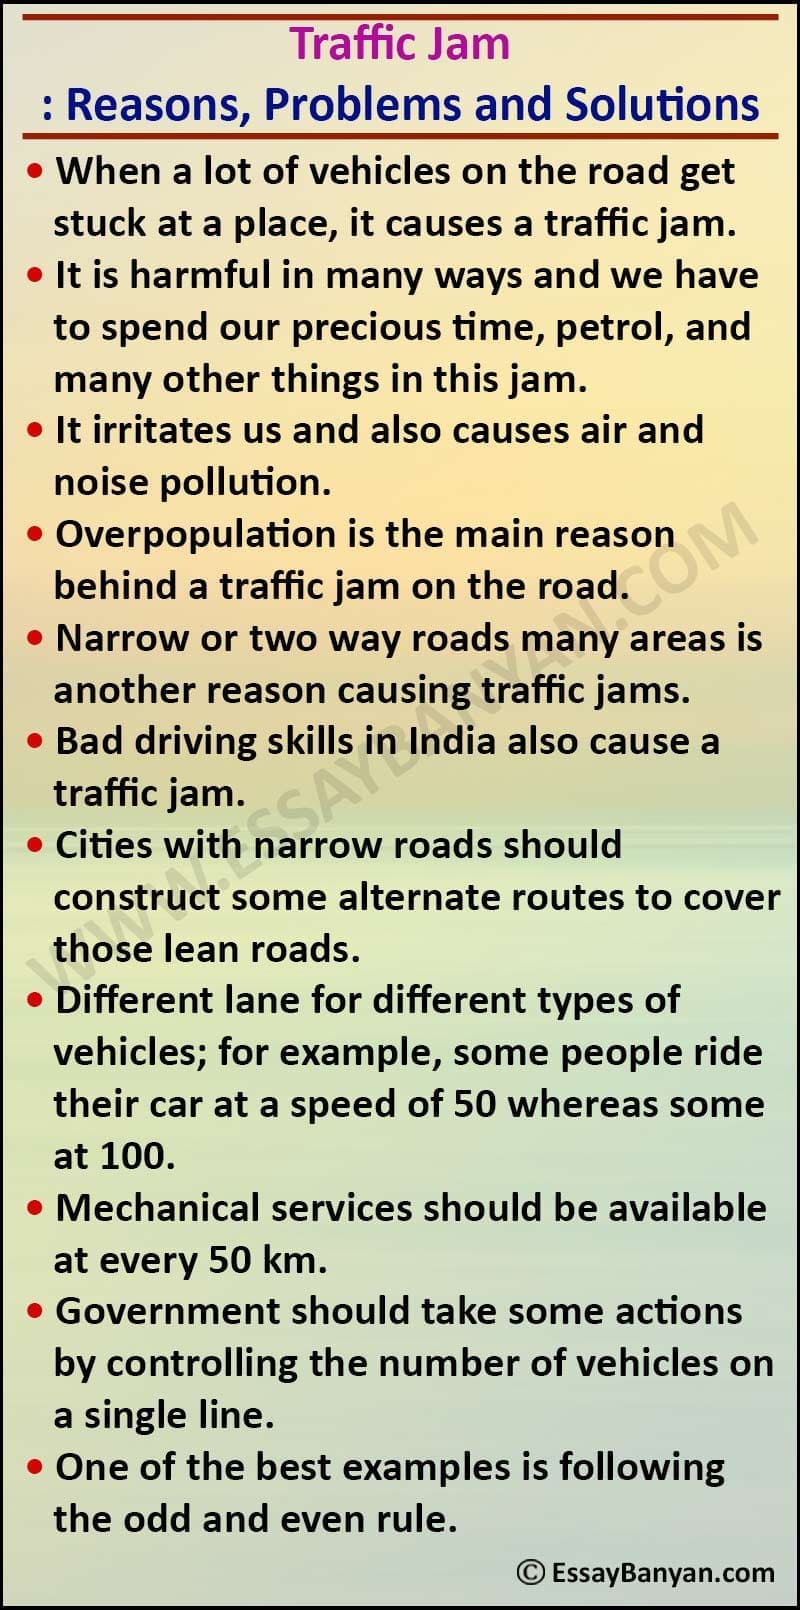 Essay on Traffic Jam